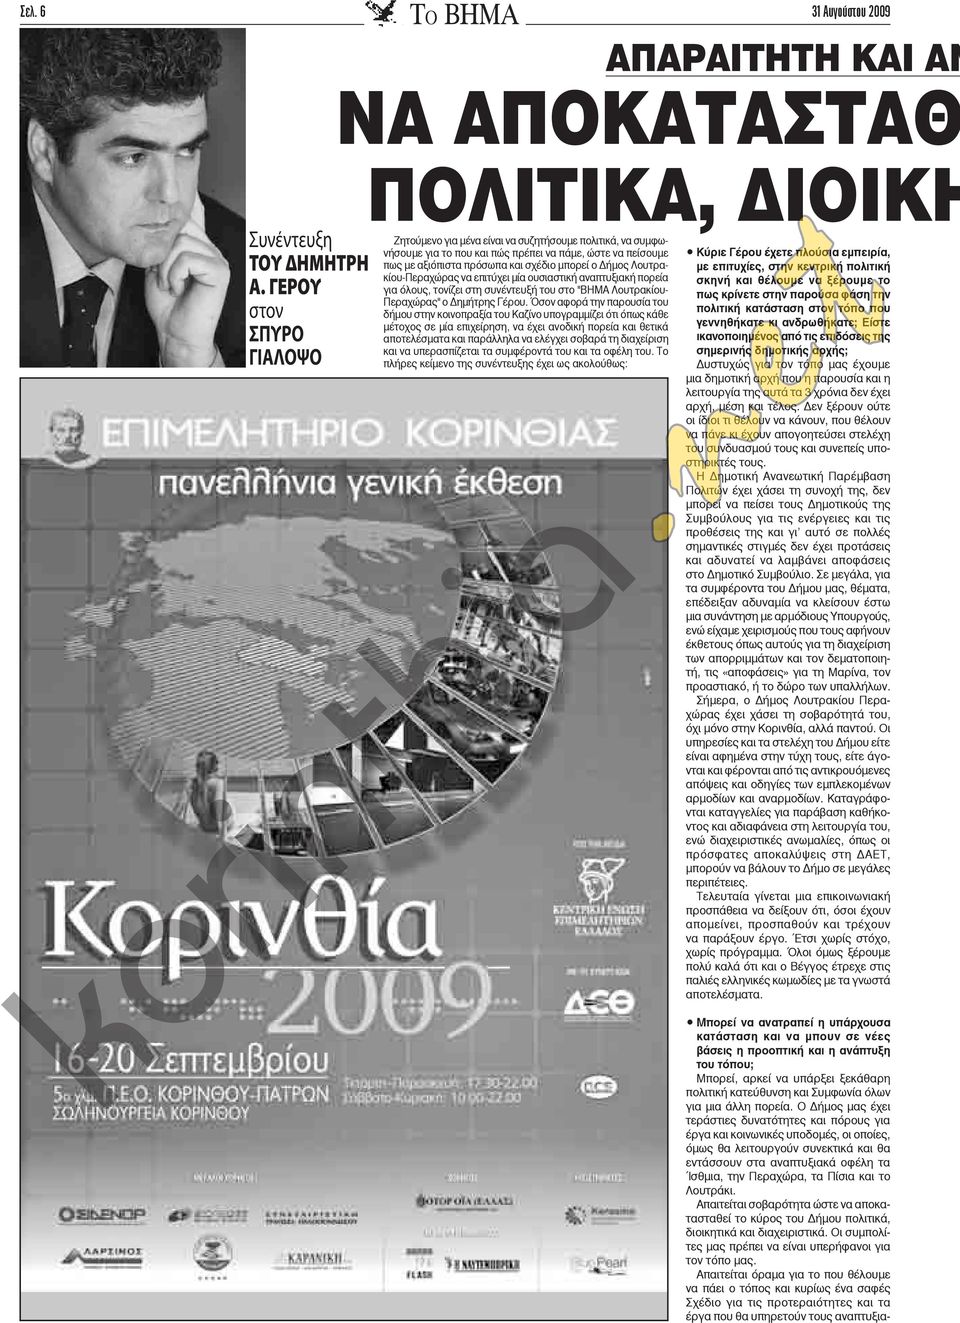 μπορεί ο Δήμος Λουτρακίου-Περαχώρας να επιτύχει μία ουσιαστική αναπτυξιακή πορεία για όλους, τονίζει στη συνέντευξή του στο "ΒΗΜΑ Λουτρακίου- Περαχώρας" ο Δημήτρης Γέρου.